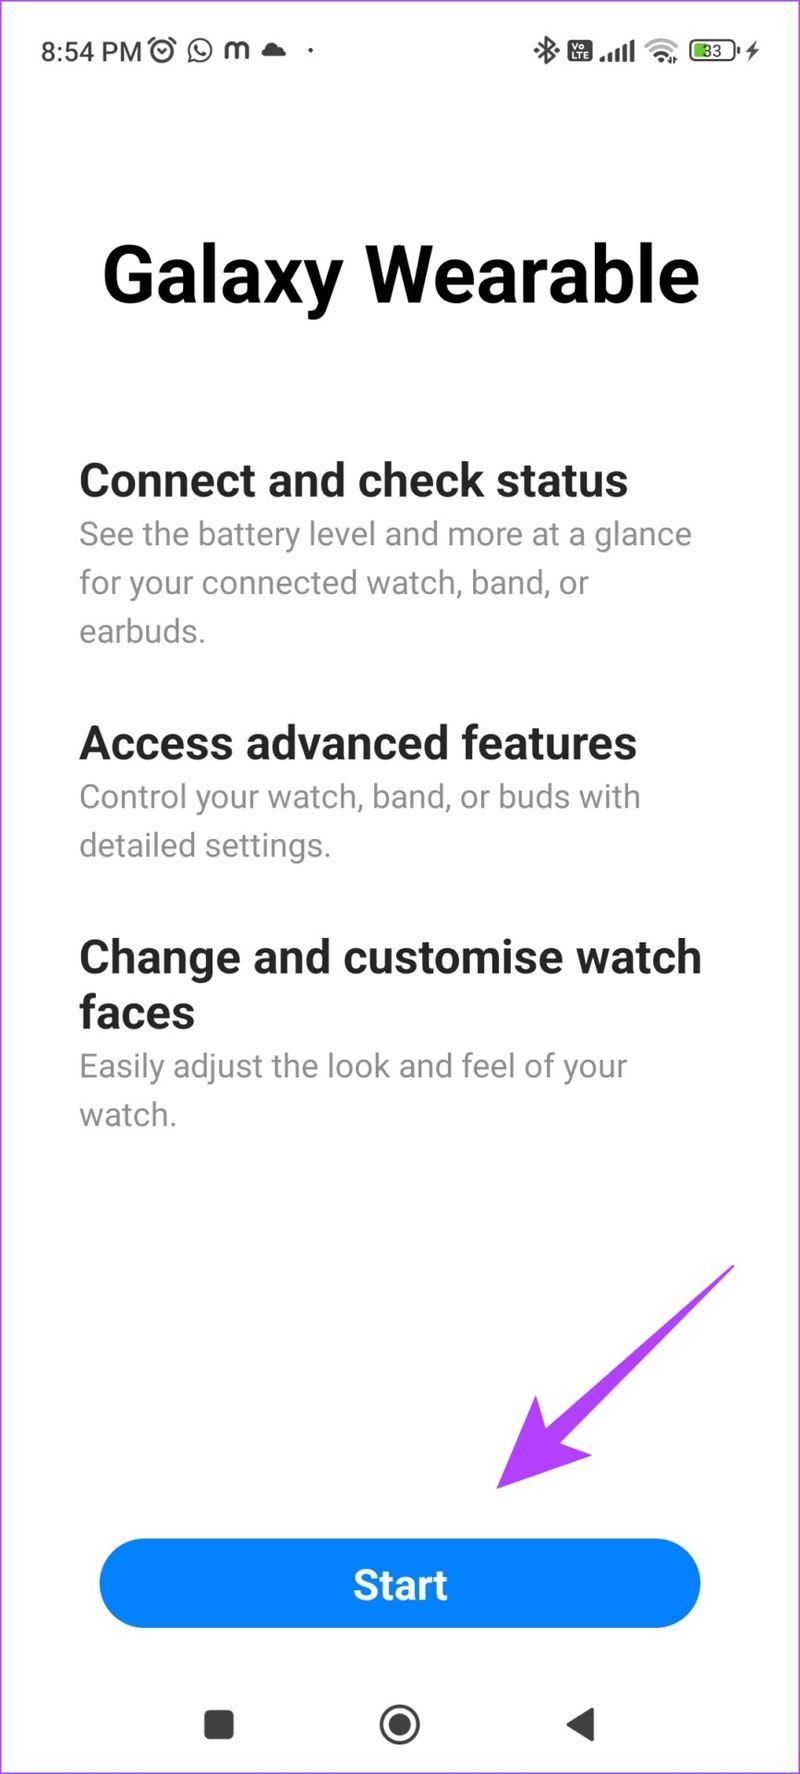 Tippen Sie in der Galaxy Wearable App auf Start